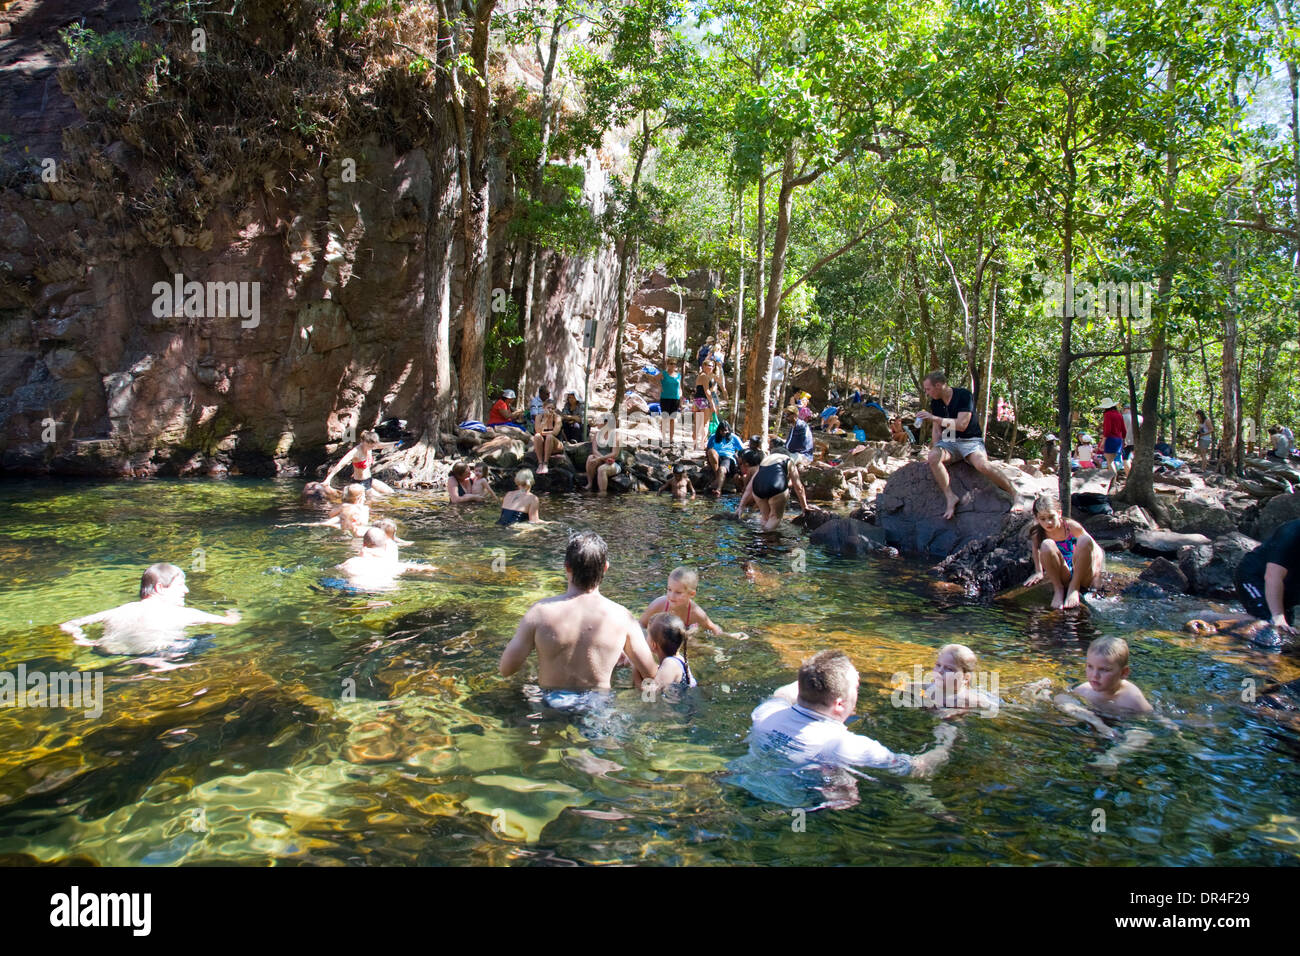 Florence tombe et piscine de plongée dans le parc national de litchfield, territoire du nord, australie avec des personnes nageant dans les eaux chaudes tropicales Banque D'Images